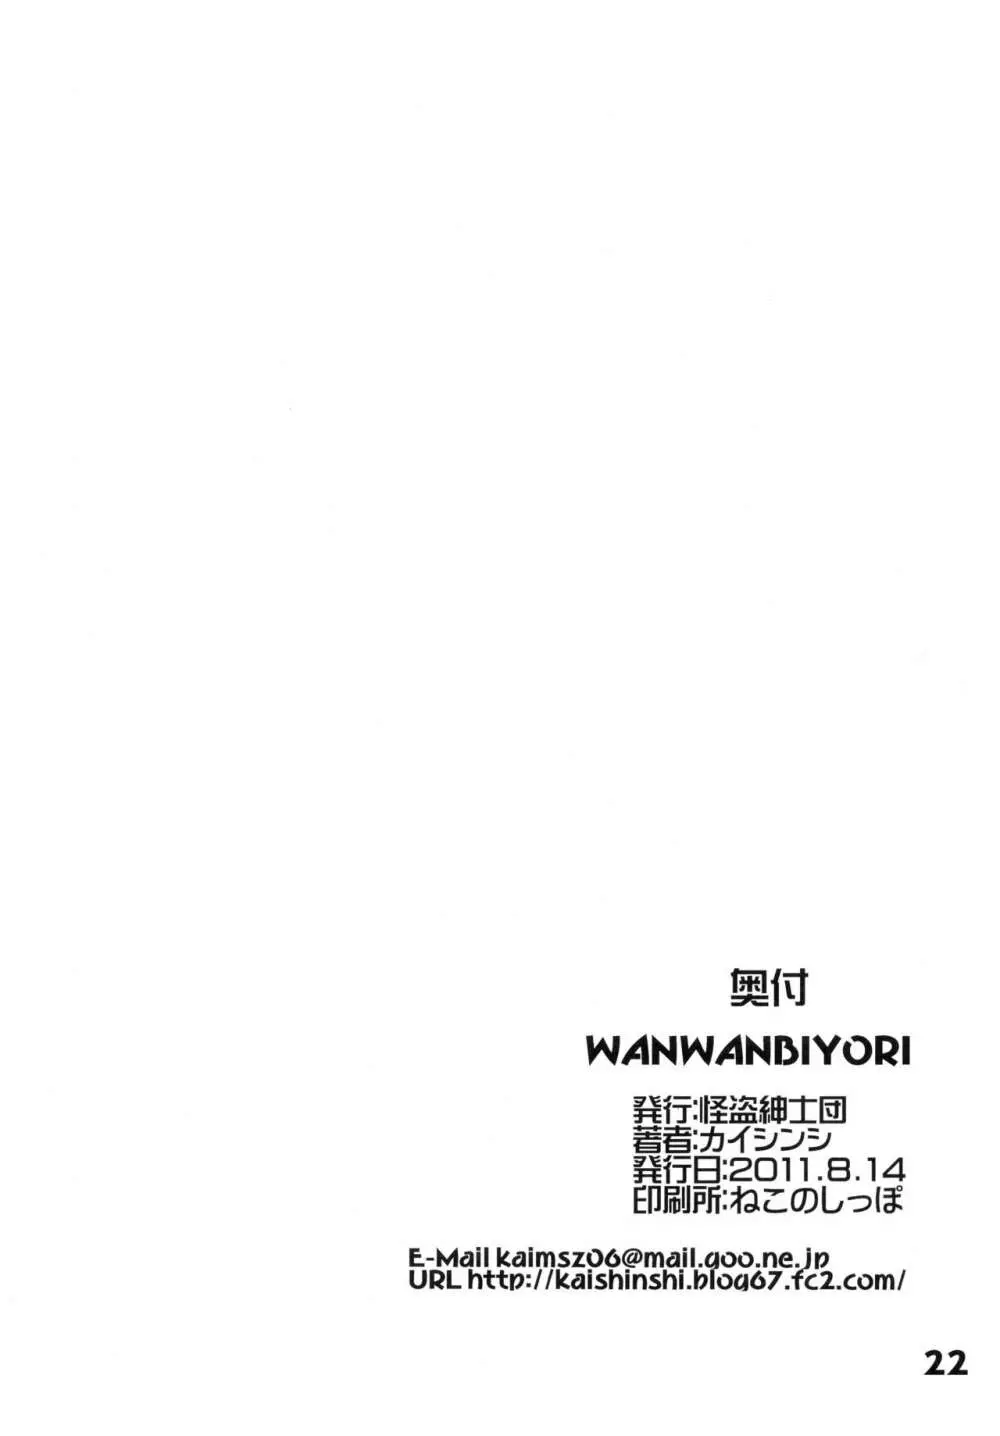 WANWANBIYORI - page22